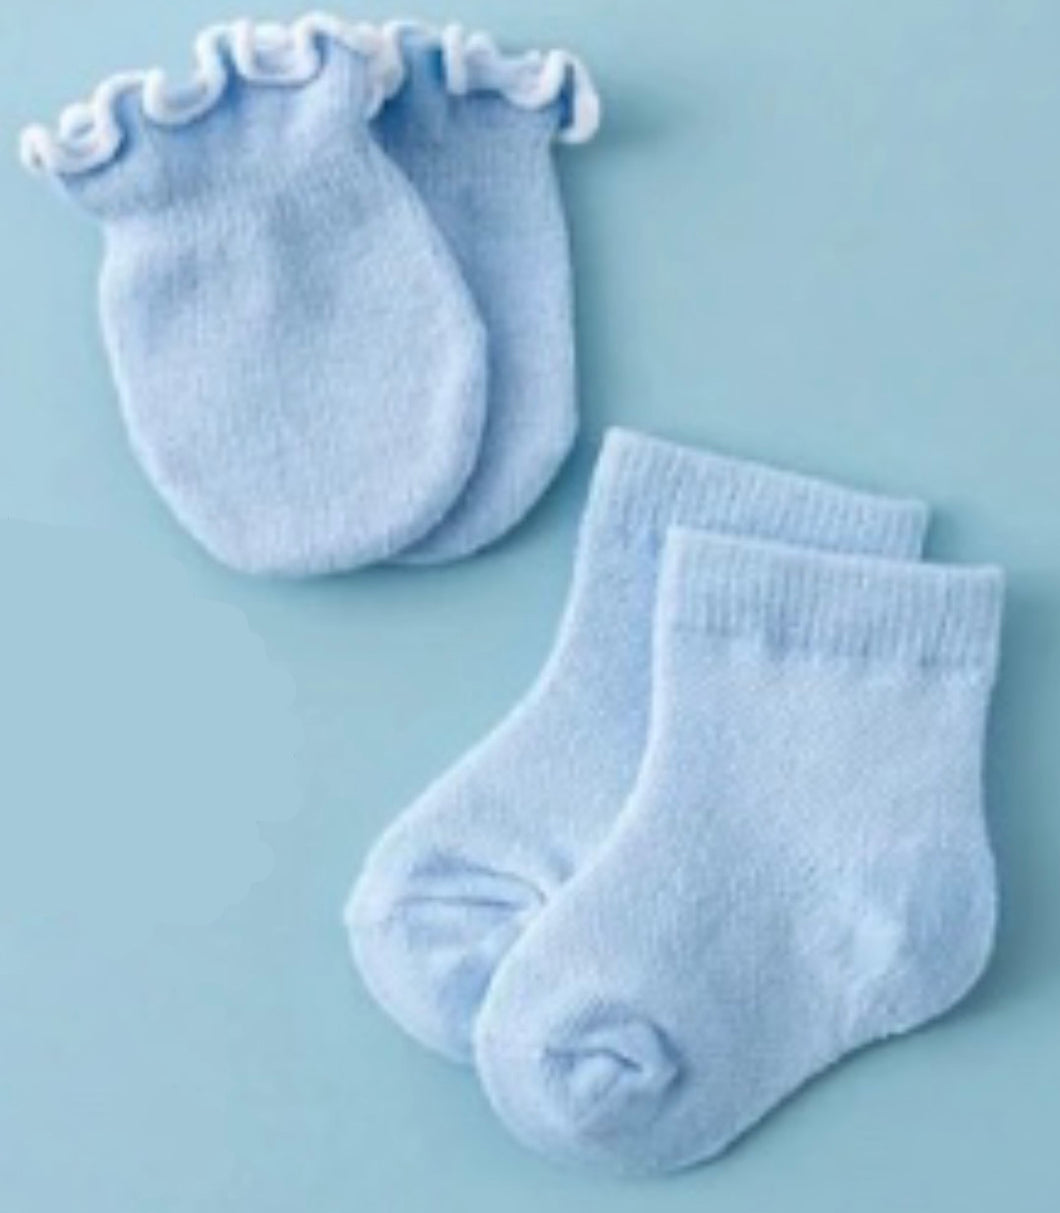 Baby socks & matching mittens